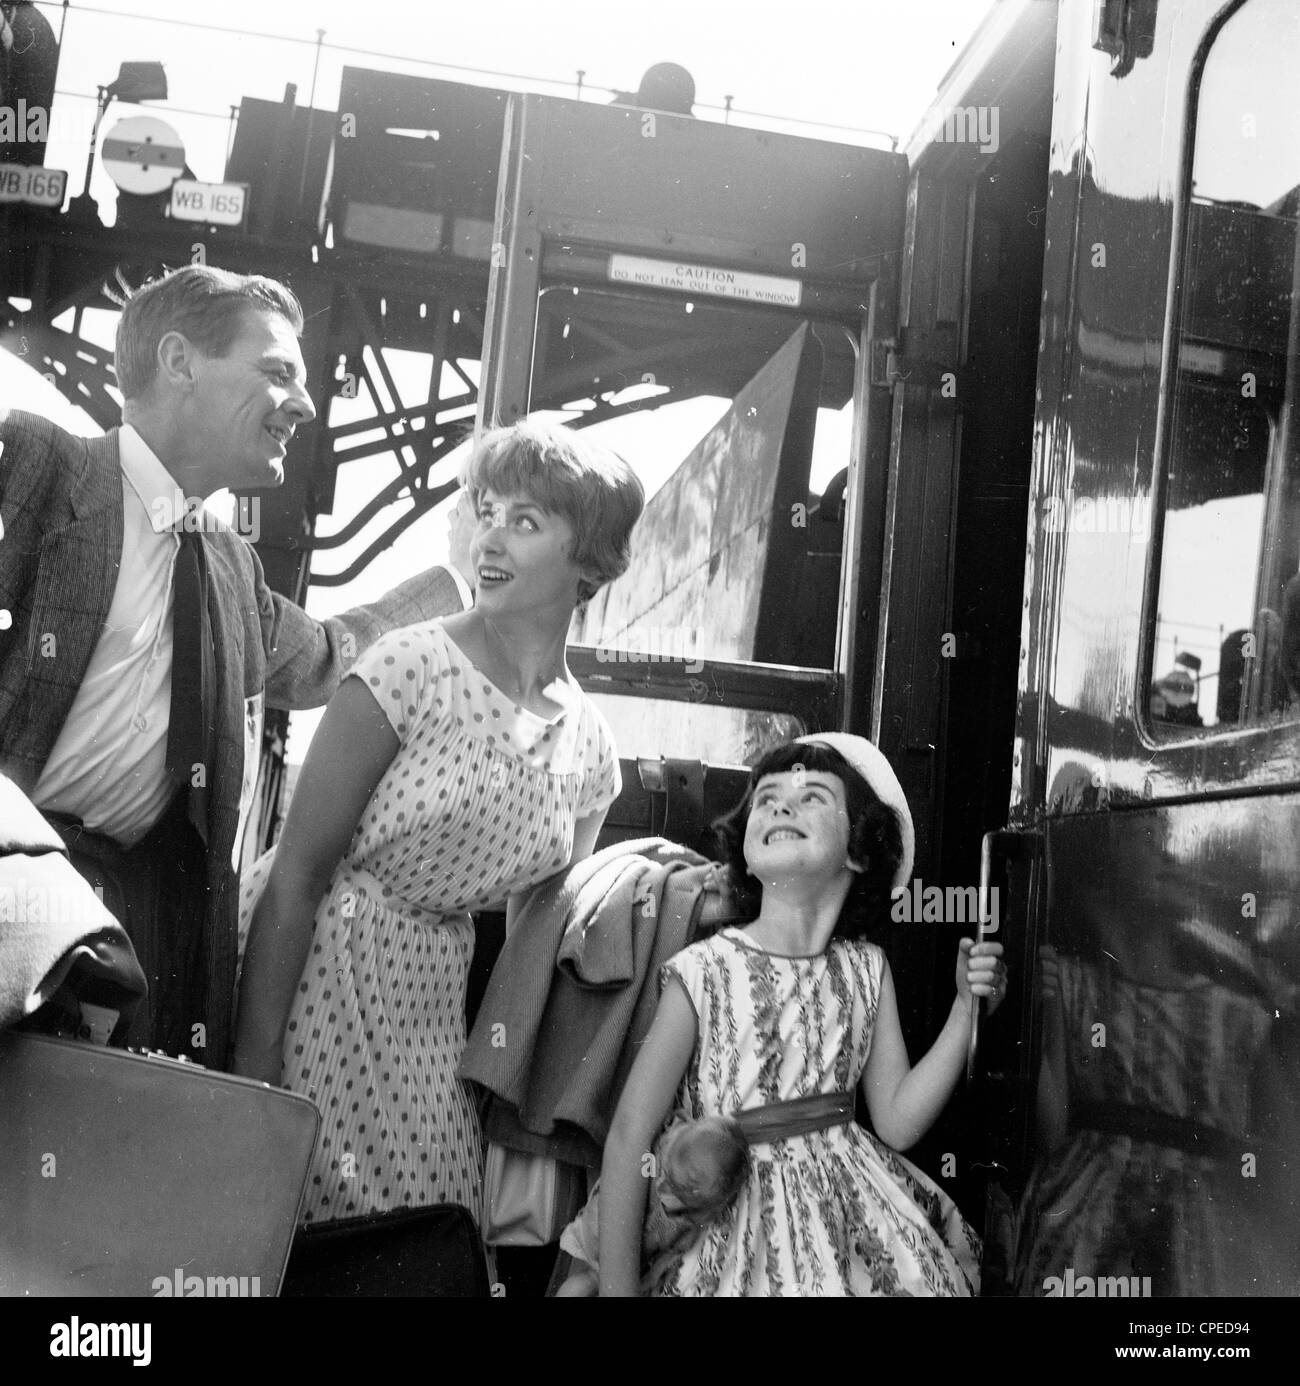 1960s, historisch, Sommerzeit eine aufgeregte Familie, die in den Urlaub fährt, an Bord eines Zugwagens auf einer Bahnplattform, England, Großbritannien. Die Dame trägt ein gepunktetes Kleid, das in dieser Zeit in Mode war, während der Mann formallt in Hemd und Krawatte gekleidet ist, mit Jacke, wie es damals üblich war. Die junge Tochter blickt aufgeregt zu ihren Eltern. Stockfoto